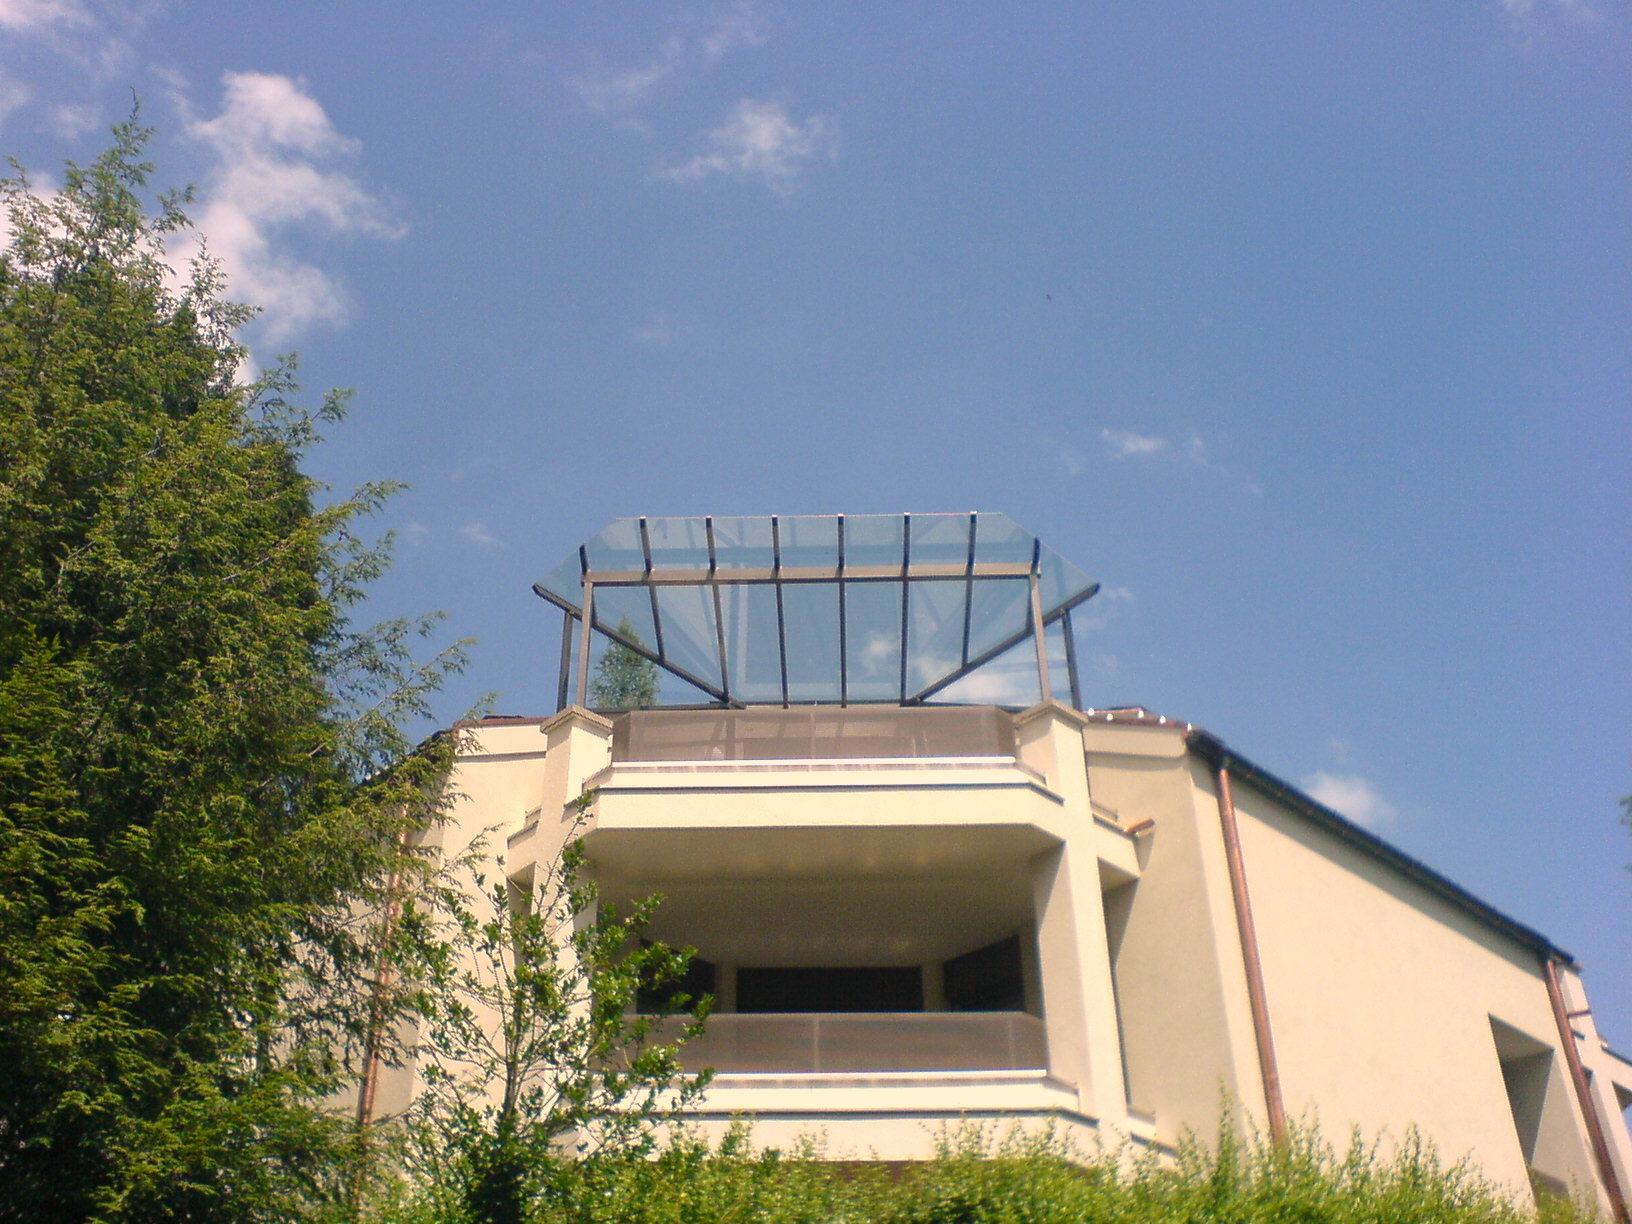 Glasdächer an der Guggistrasse in Luzern